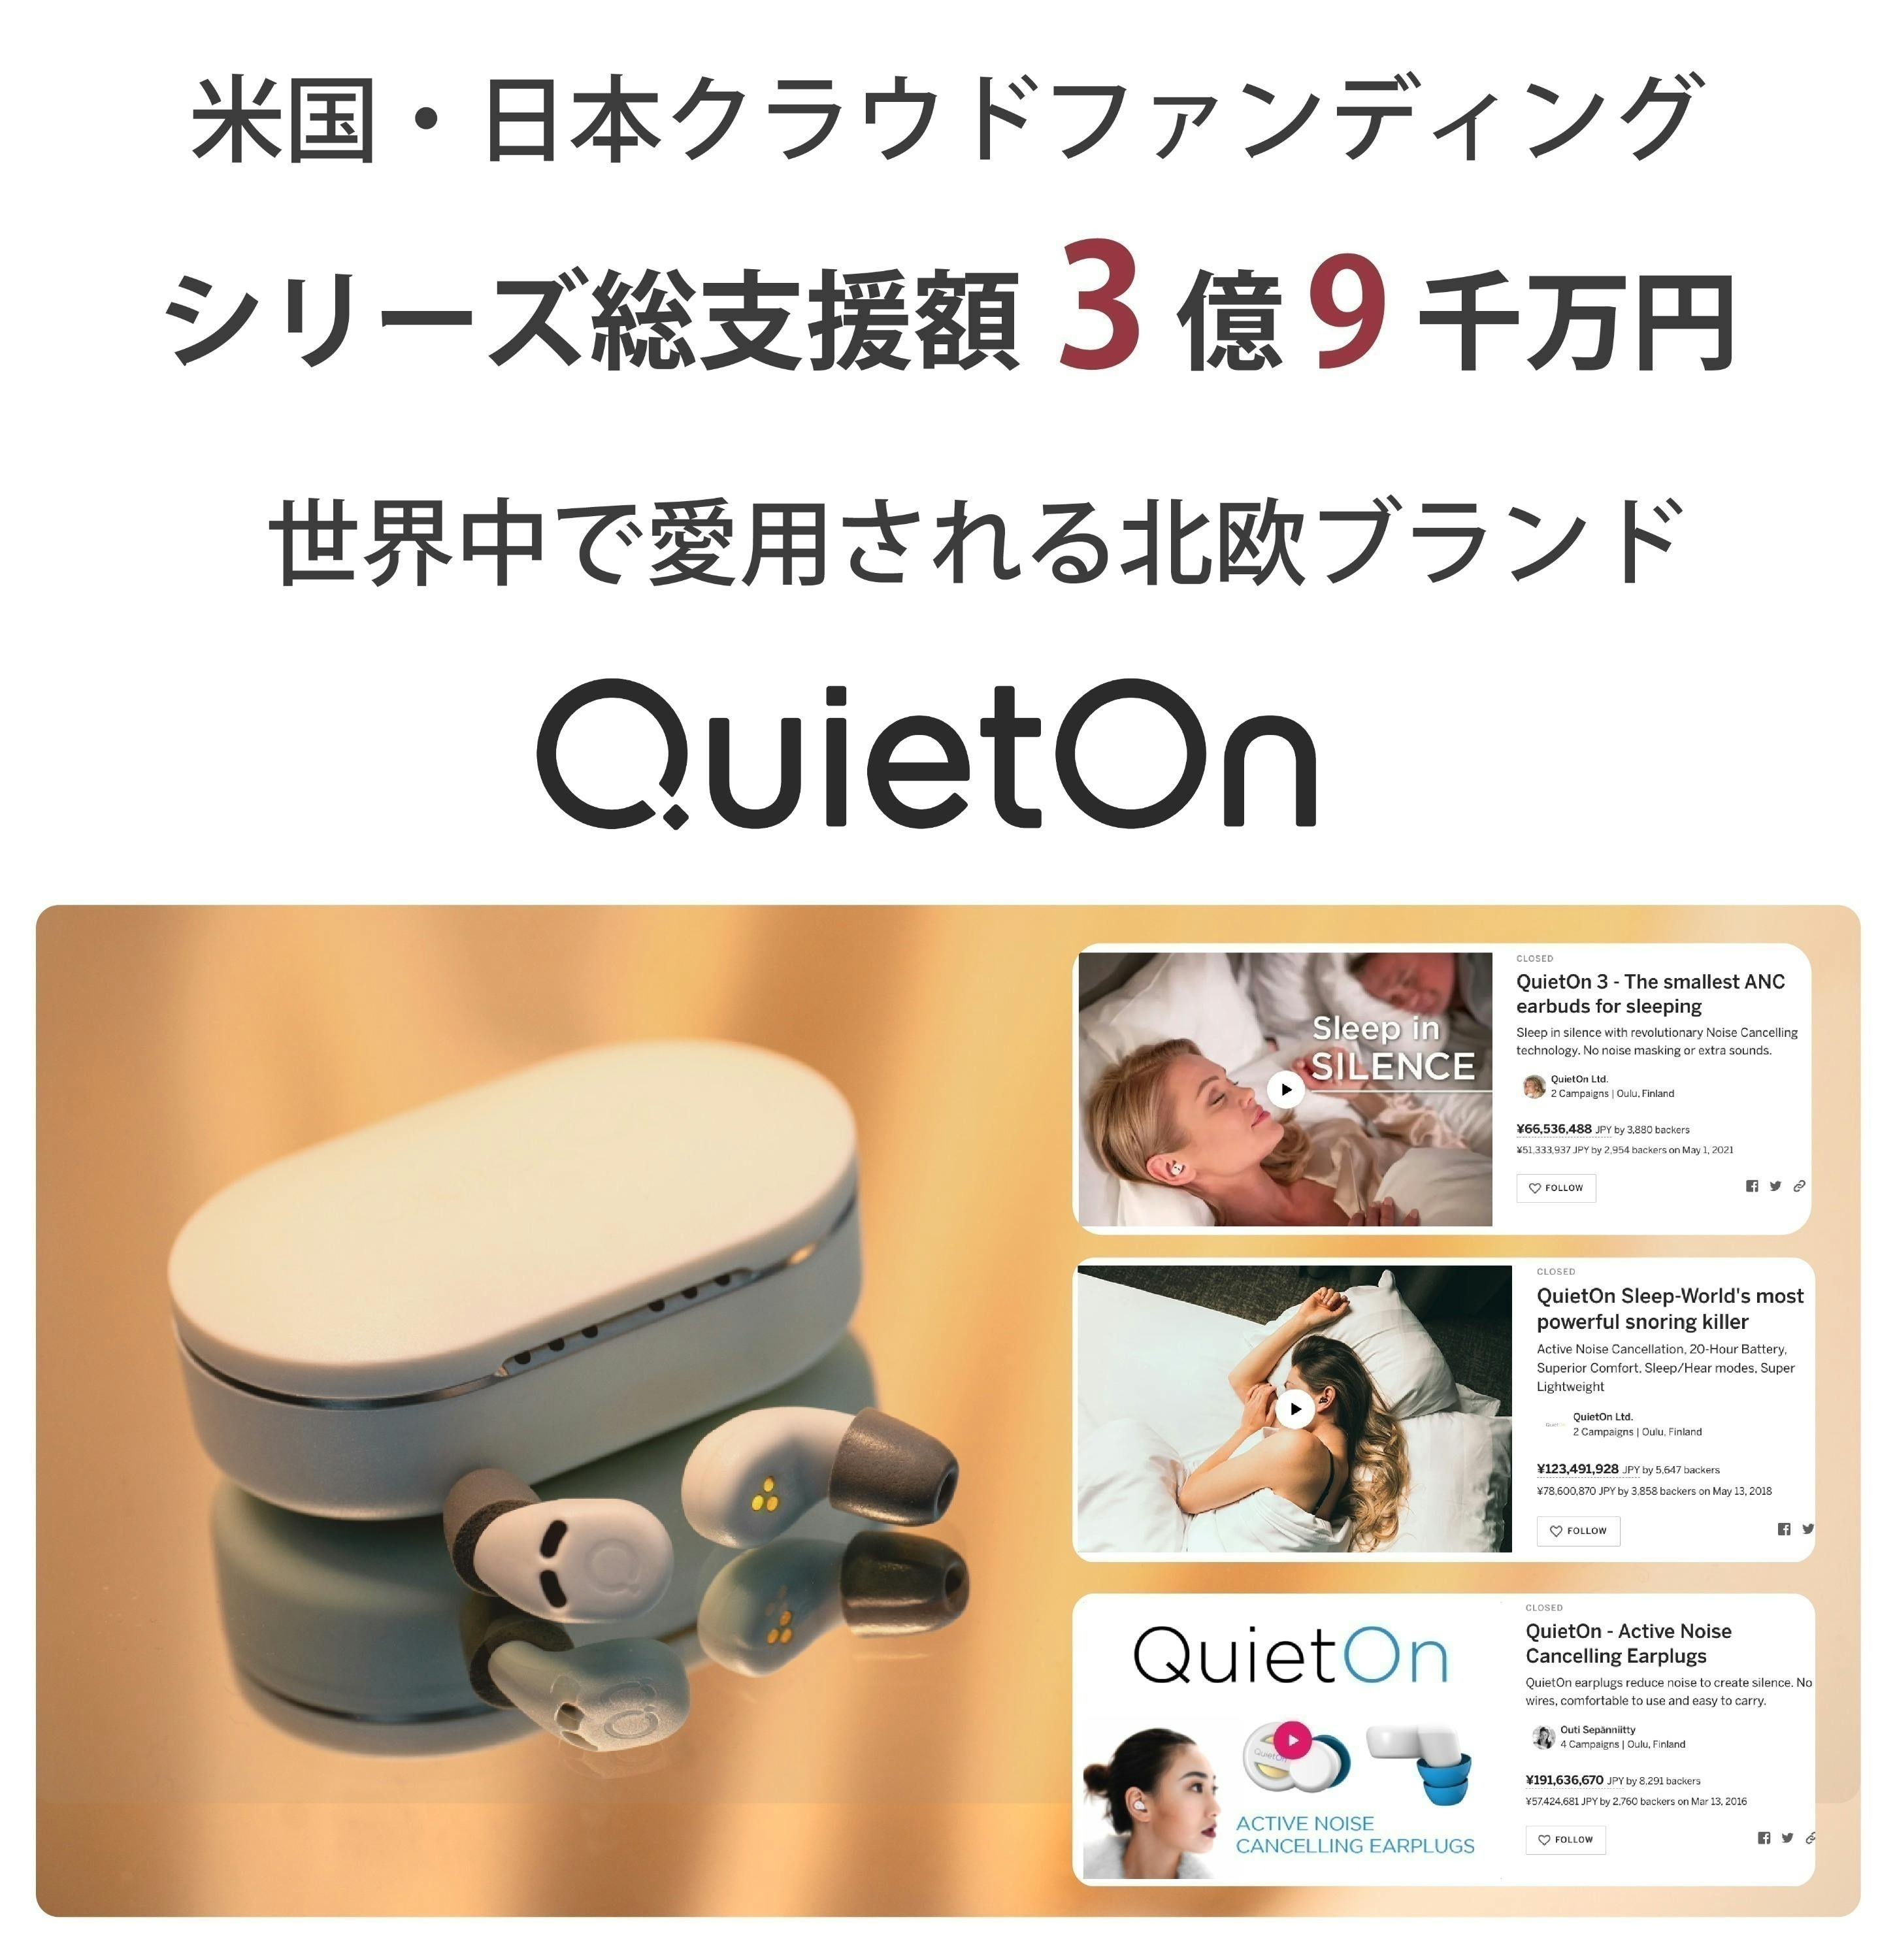 世界最小アクティブノイズキャンセル機能搭載デジタル耳栓「QuietOn 